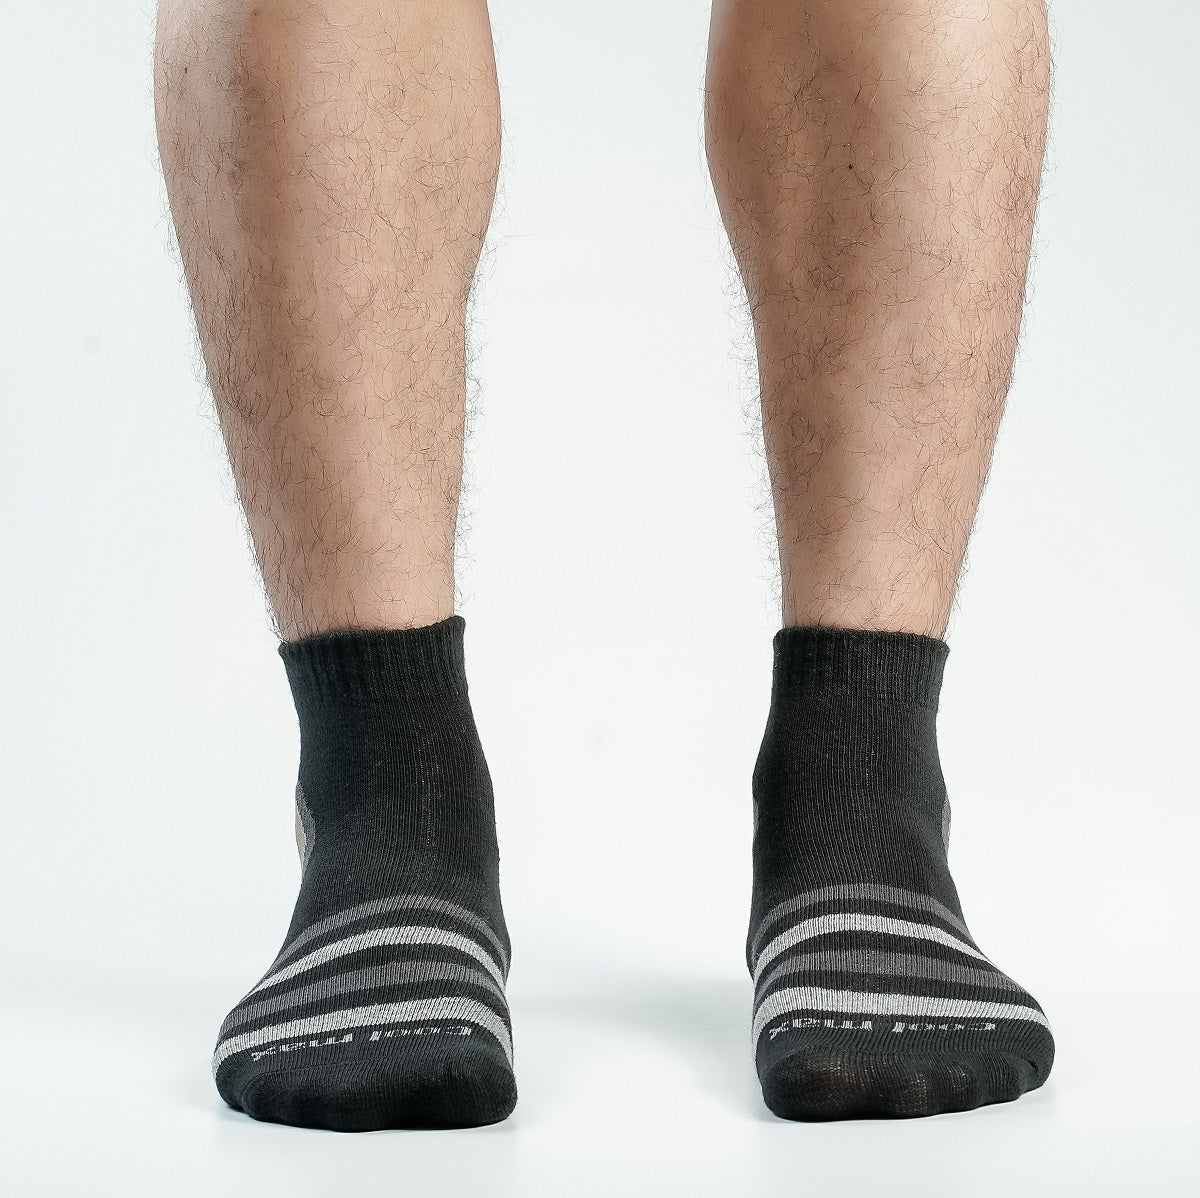 Pride Zone Ankle Socks for Men by MB Hosiery